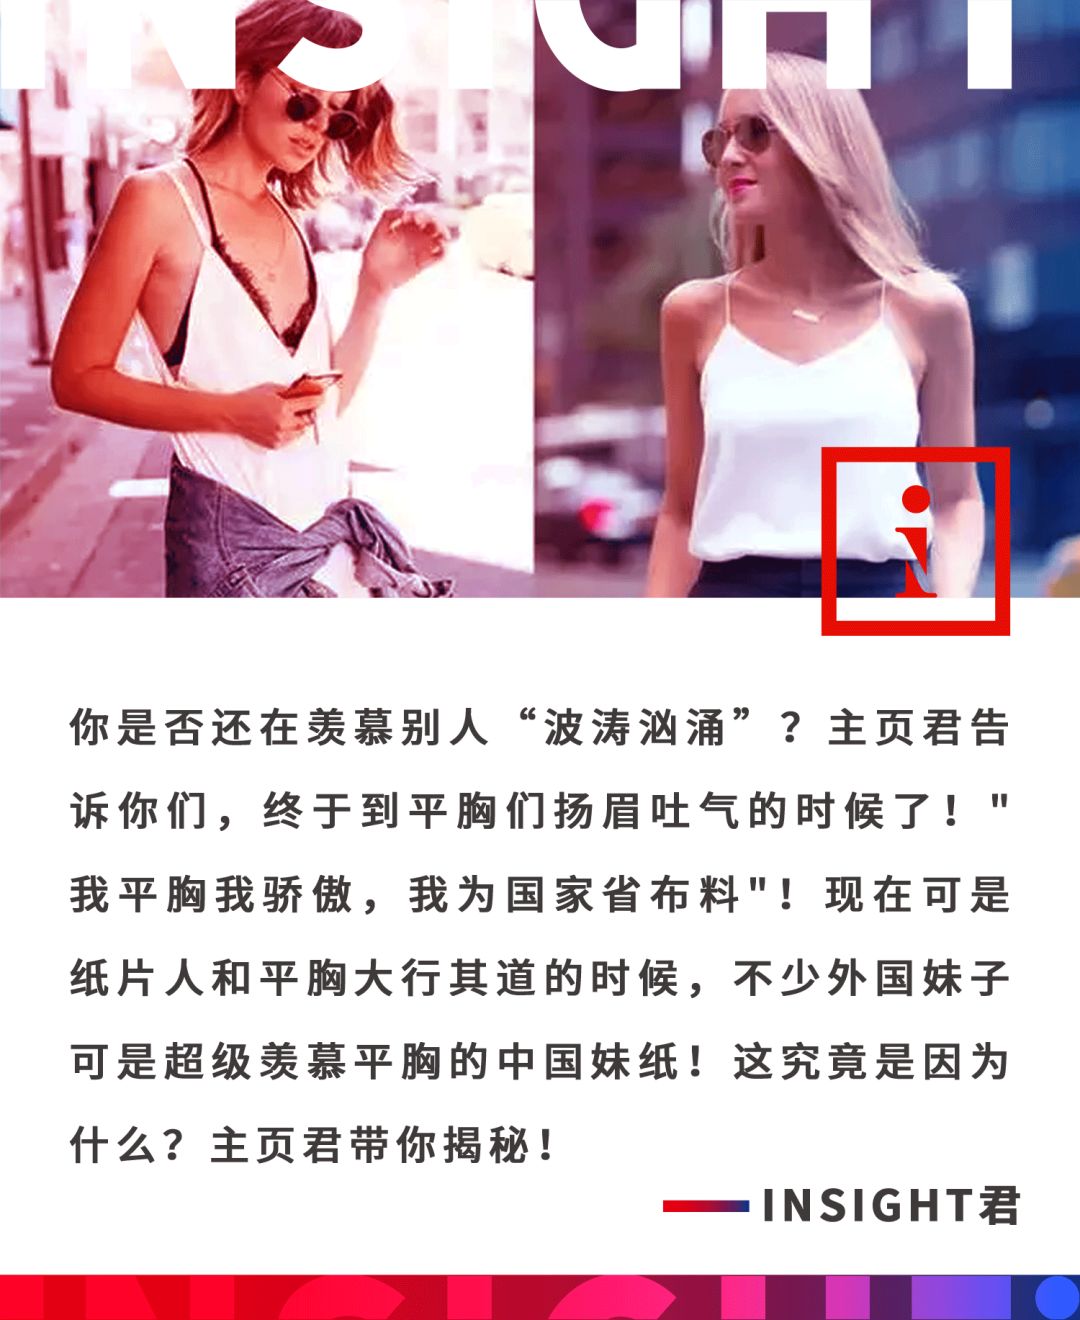 誰説大胸受歡迎 人家外國妹紙羨慕嫉妒恨的是天朝姑娘的平胸 Insight China 微文庫